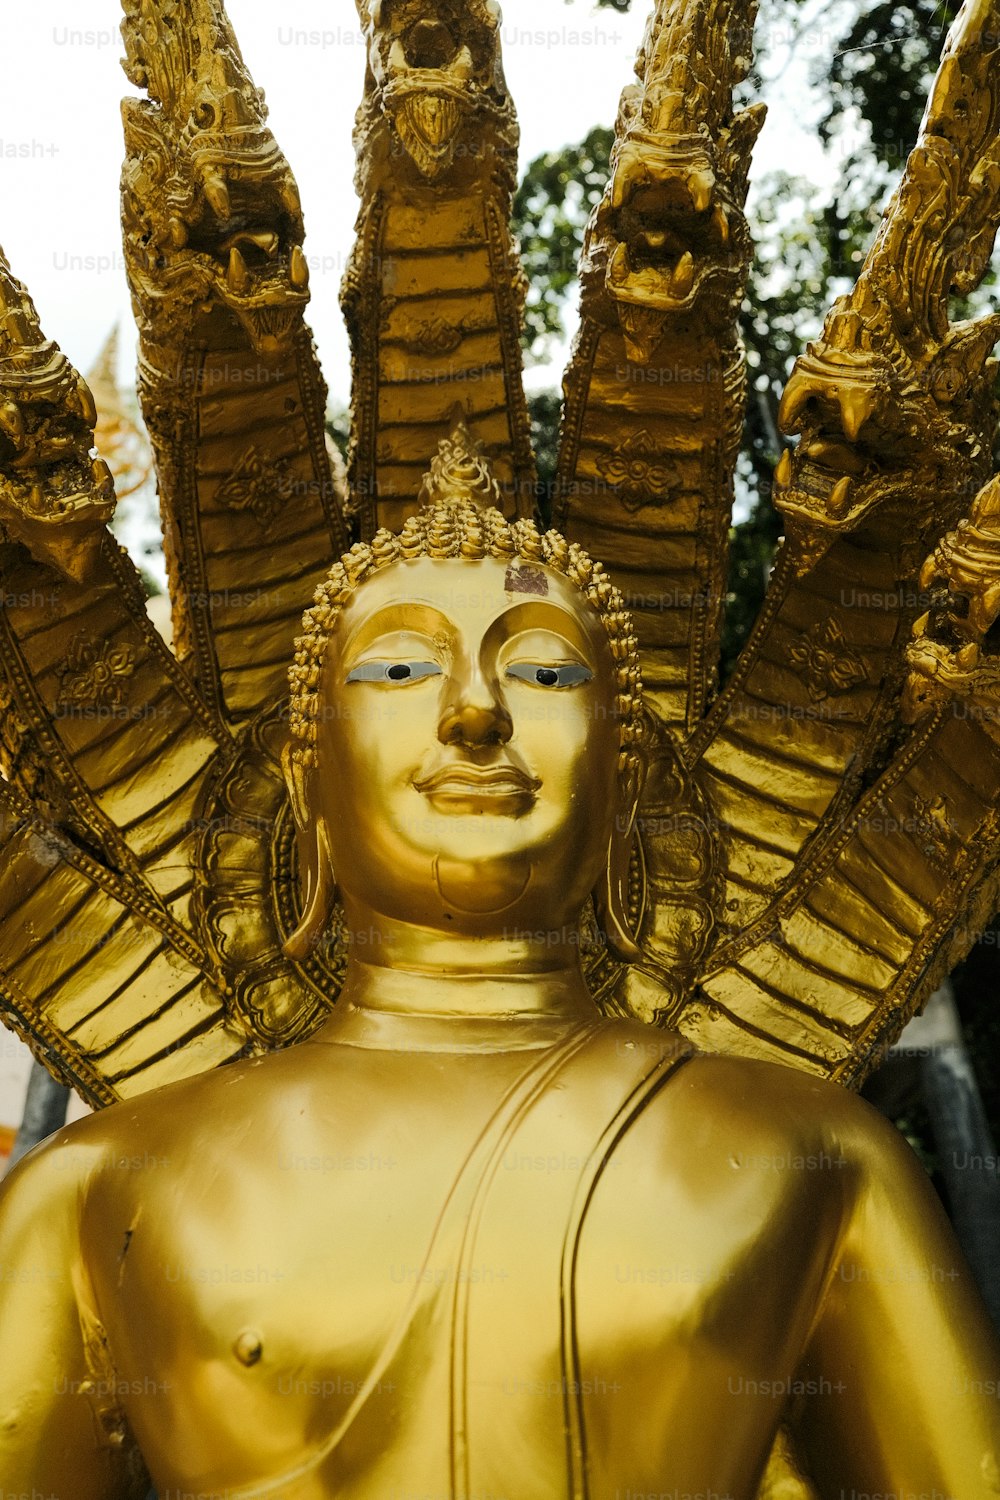 uma estátua dourada de uma pessoa com muitos braços estendidos